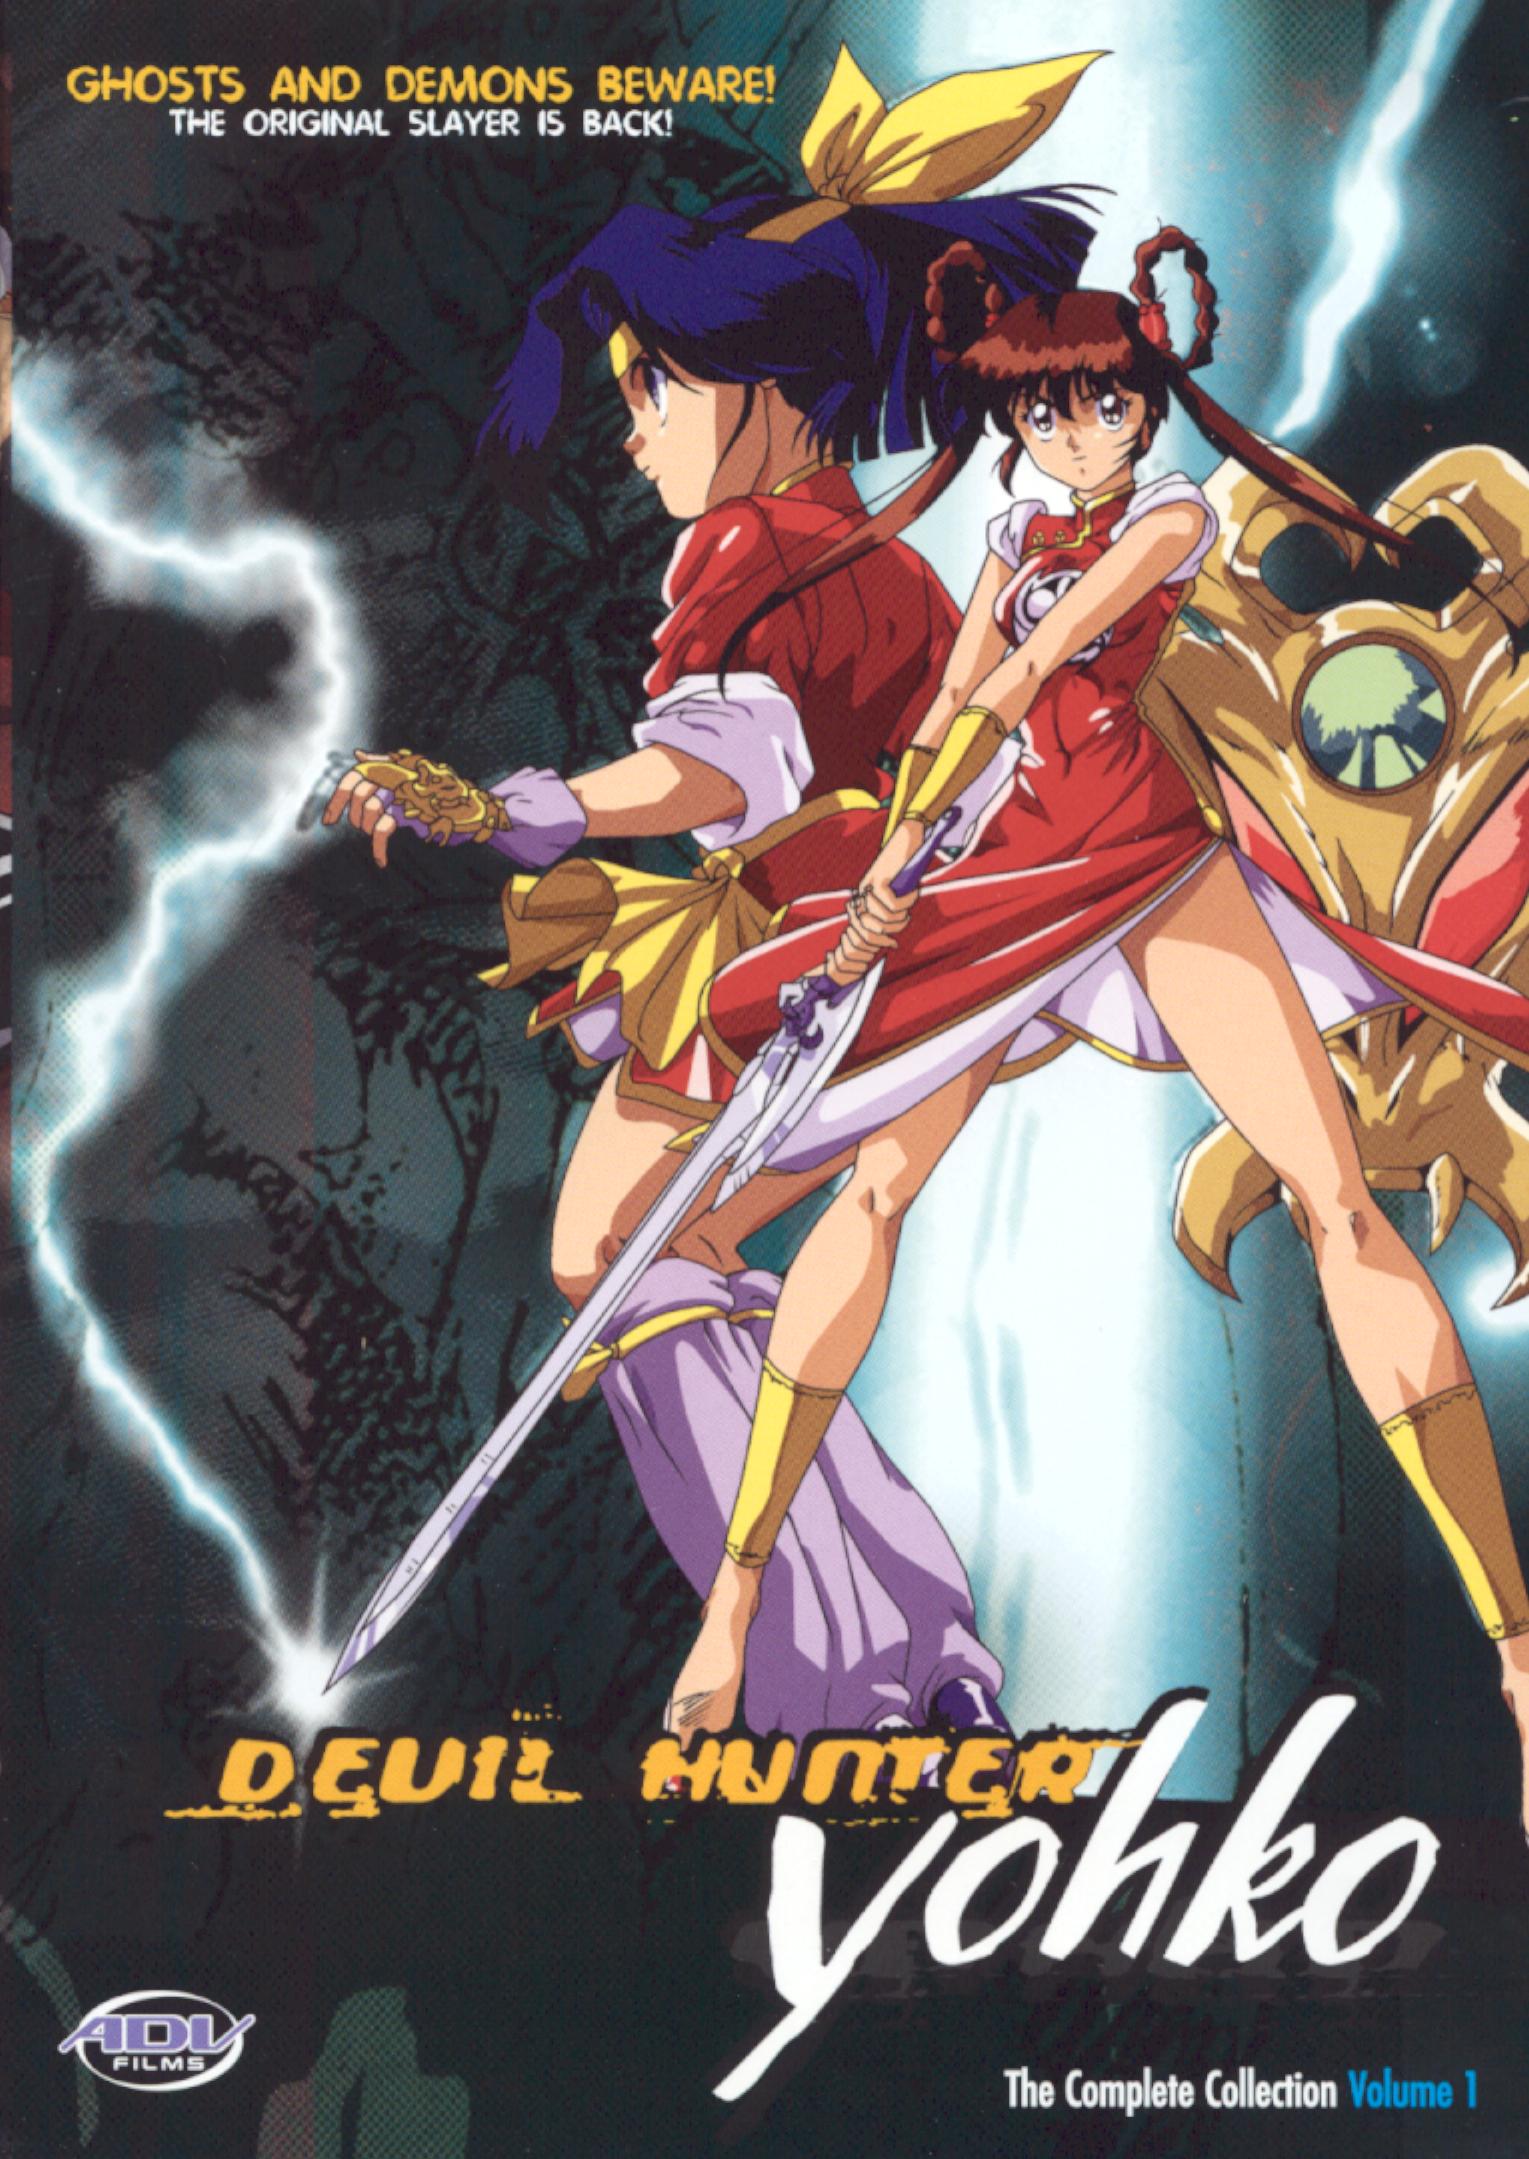 Anime [A-I] - D - Devil Hunter Yohko - Japanimedia Store